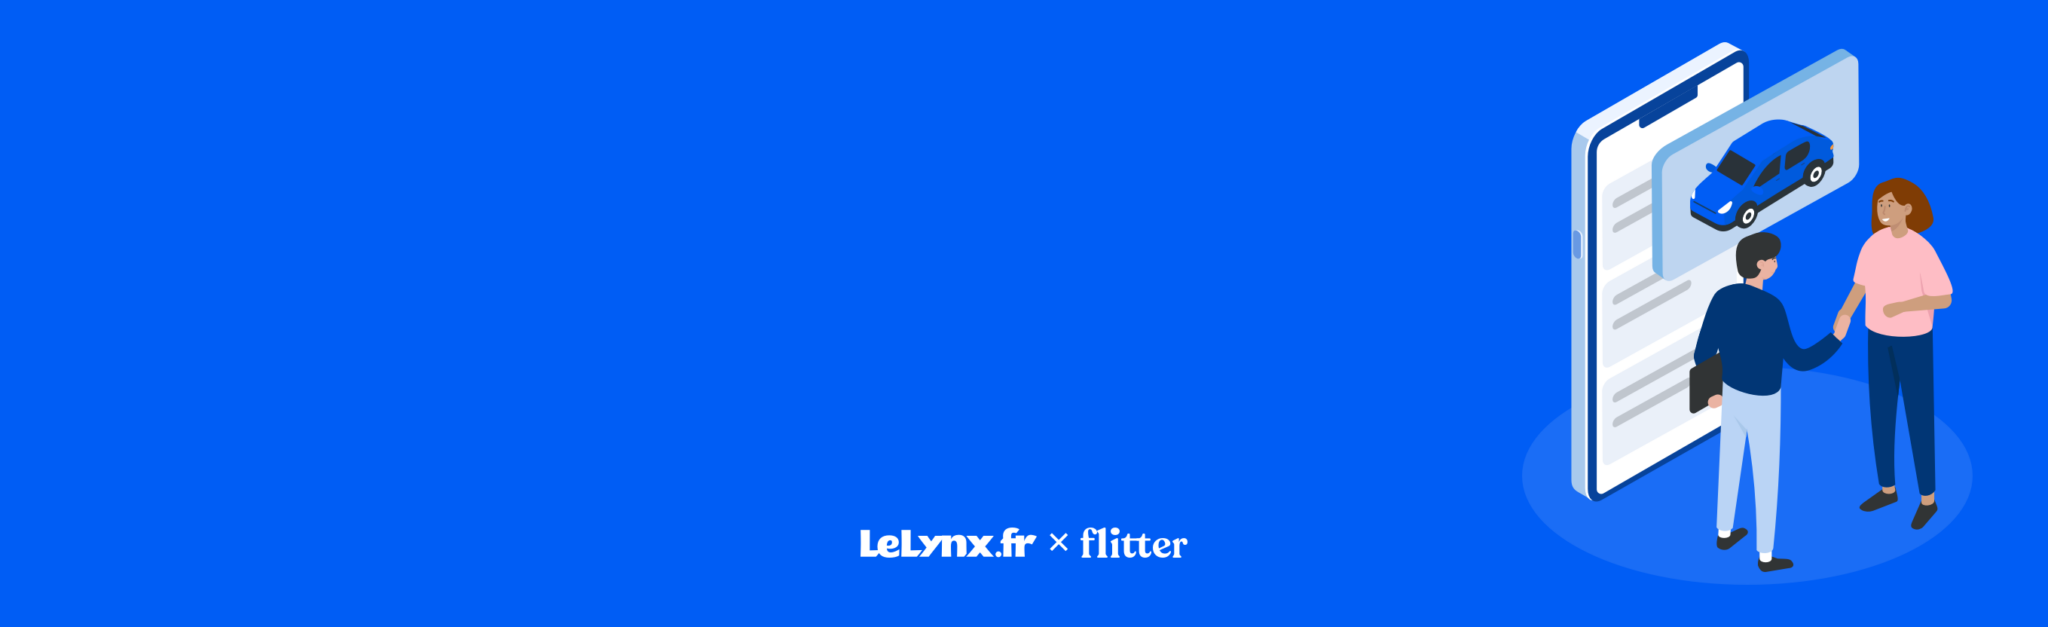 Flitter intègre LeLynx.fr